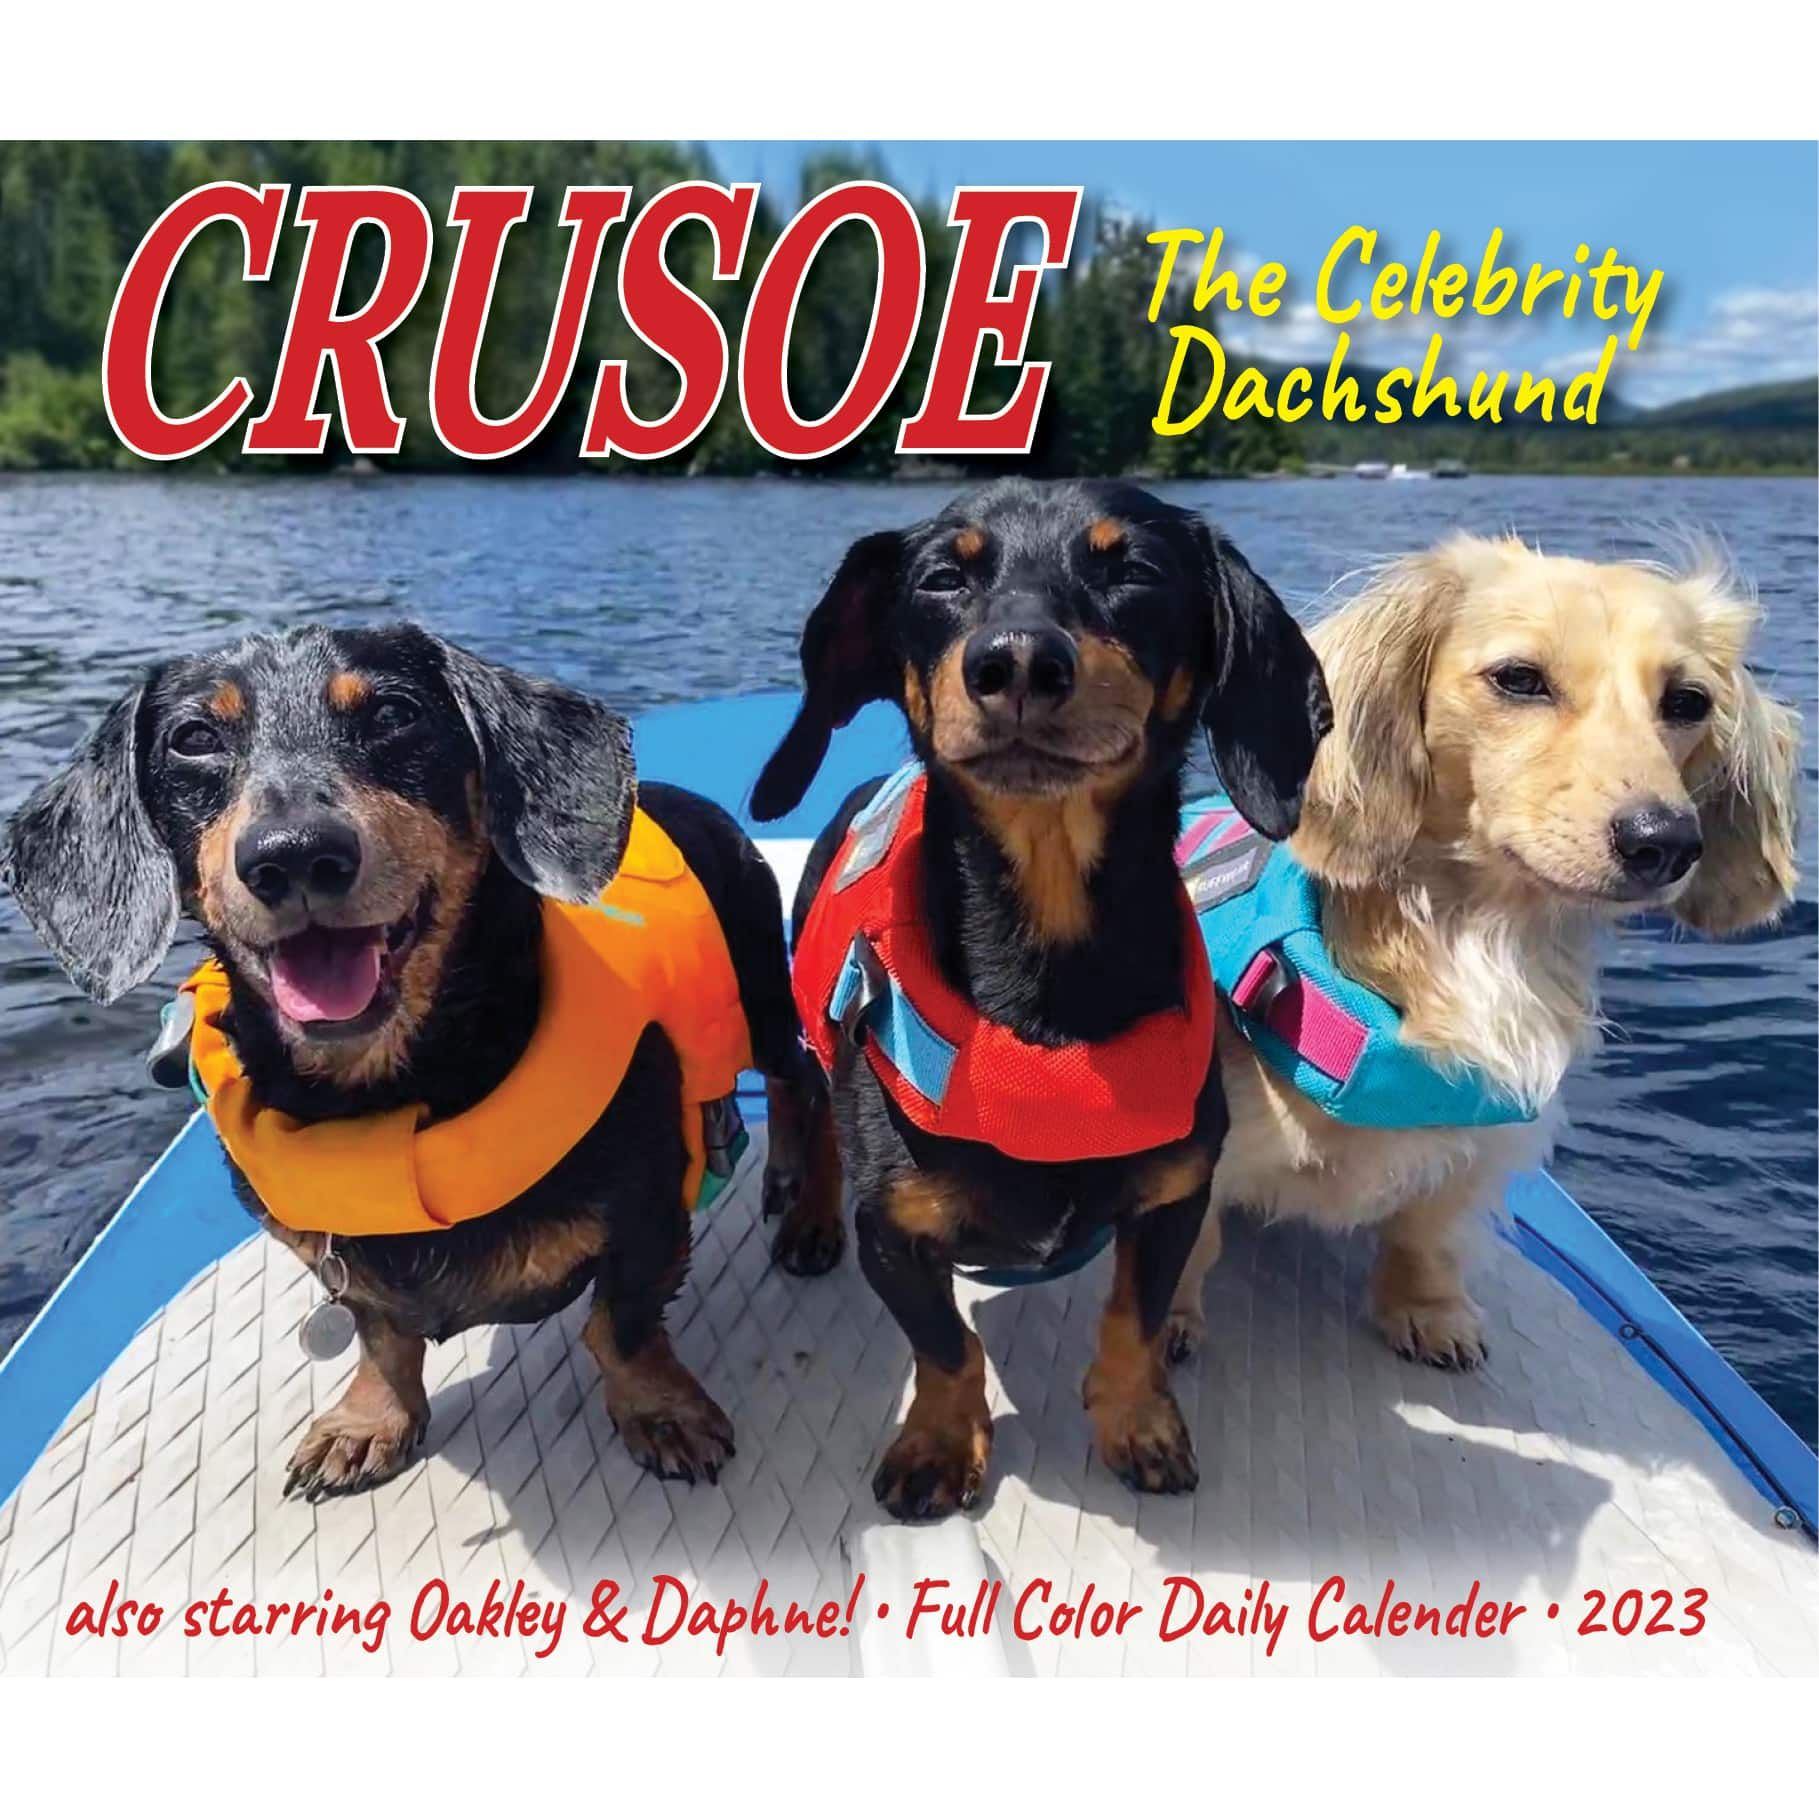 2023 Crusoe The Celebrity Dachshund Box Calendar In 2022 Crusoe The